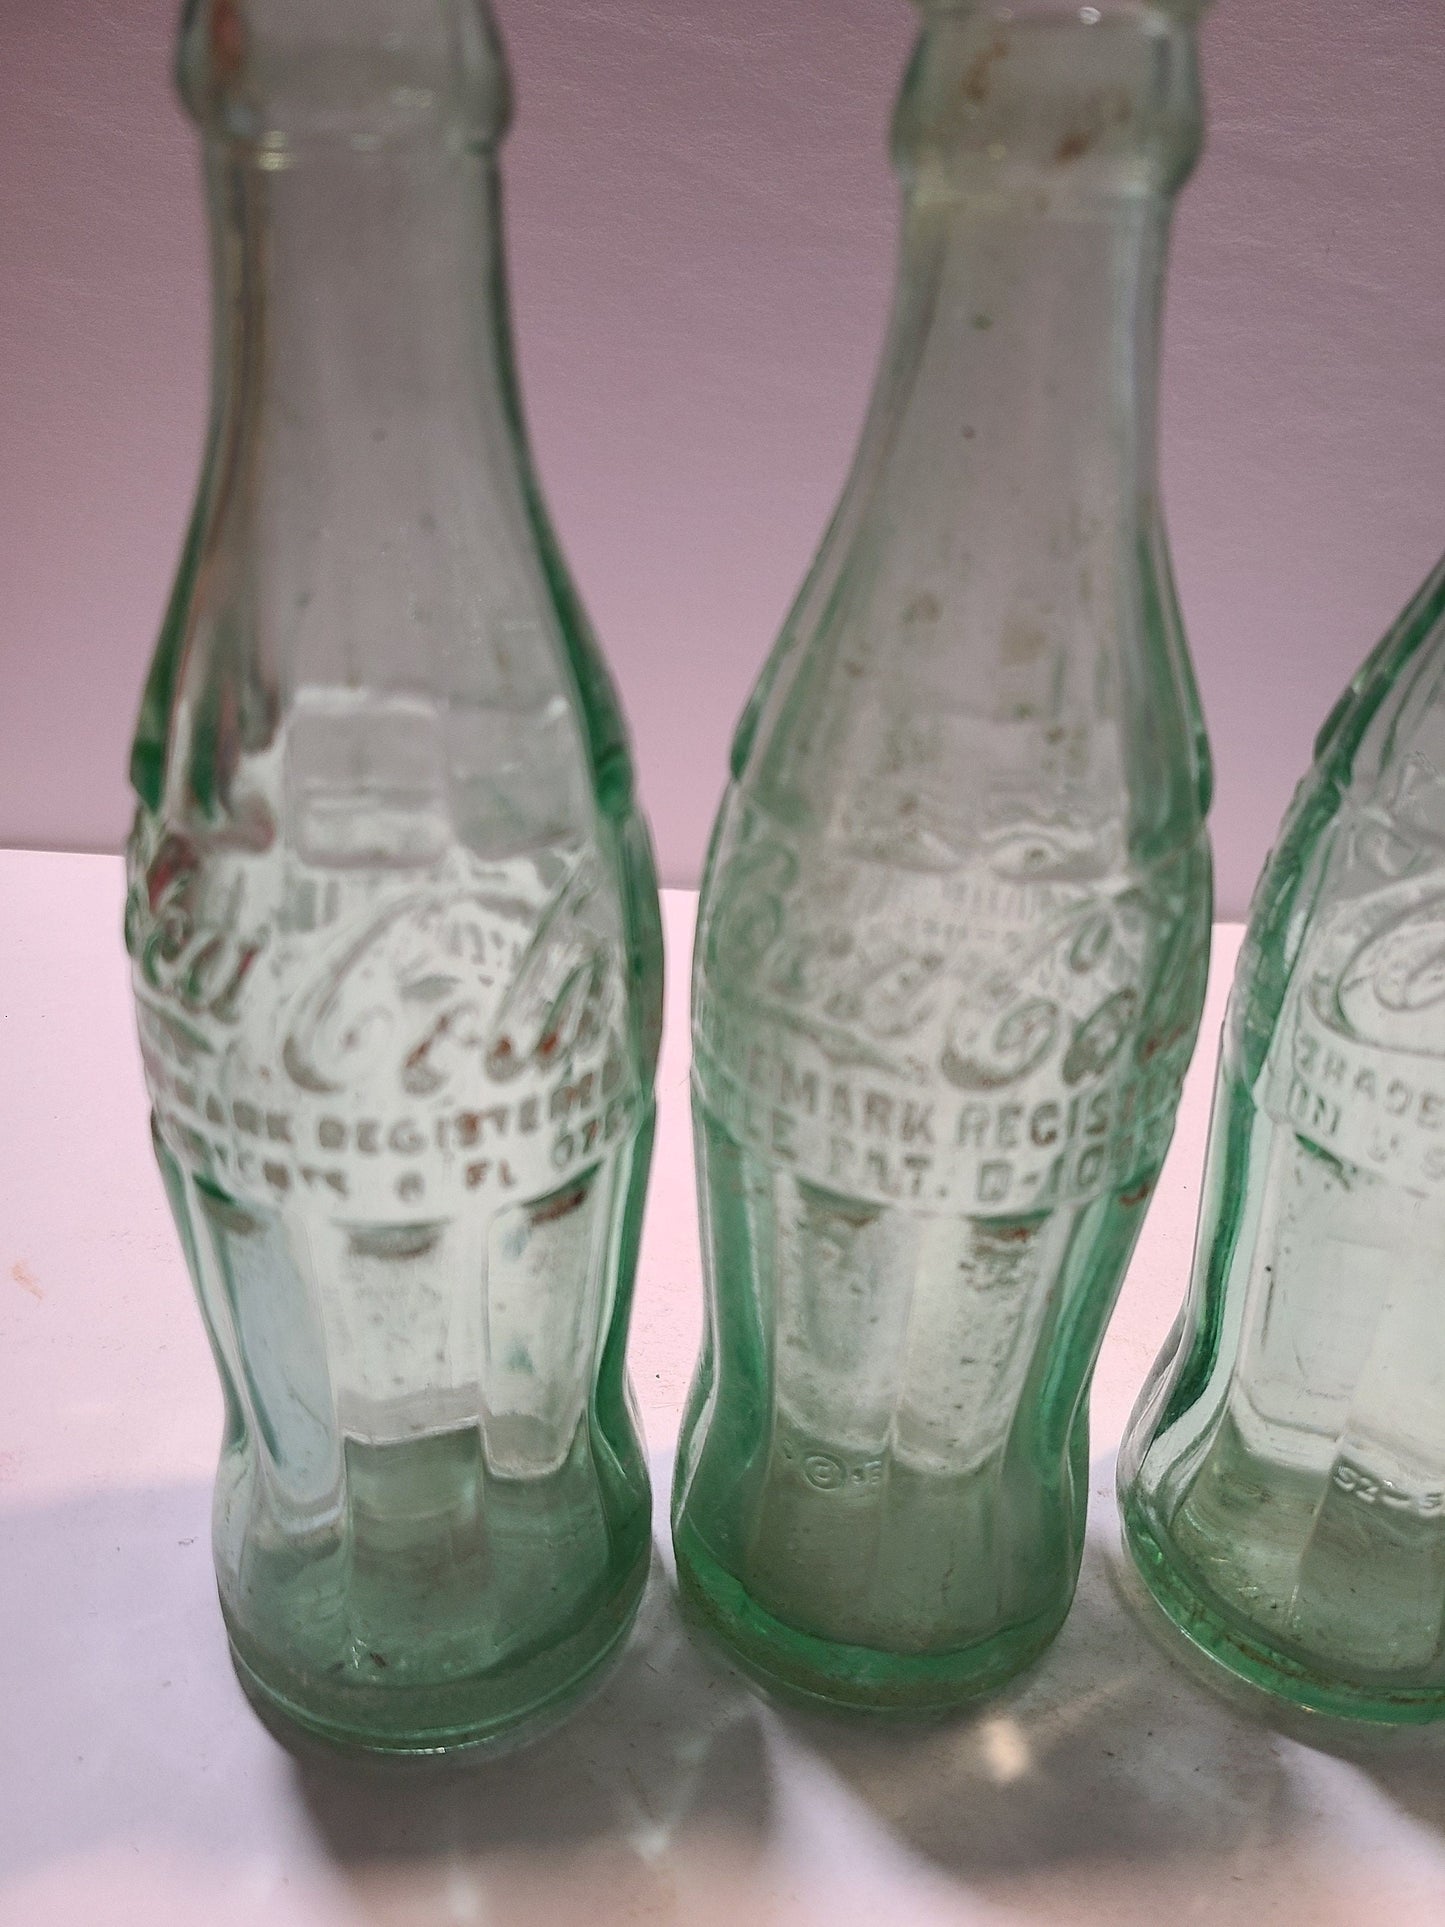 Vintage Coca cola bottles and holder